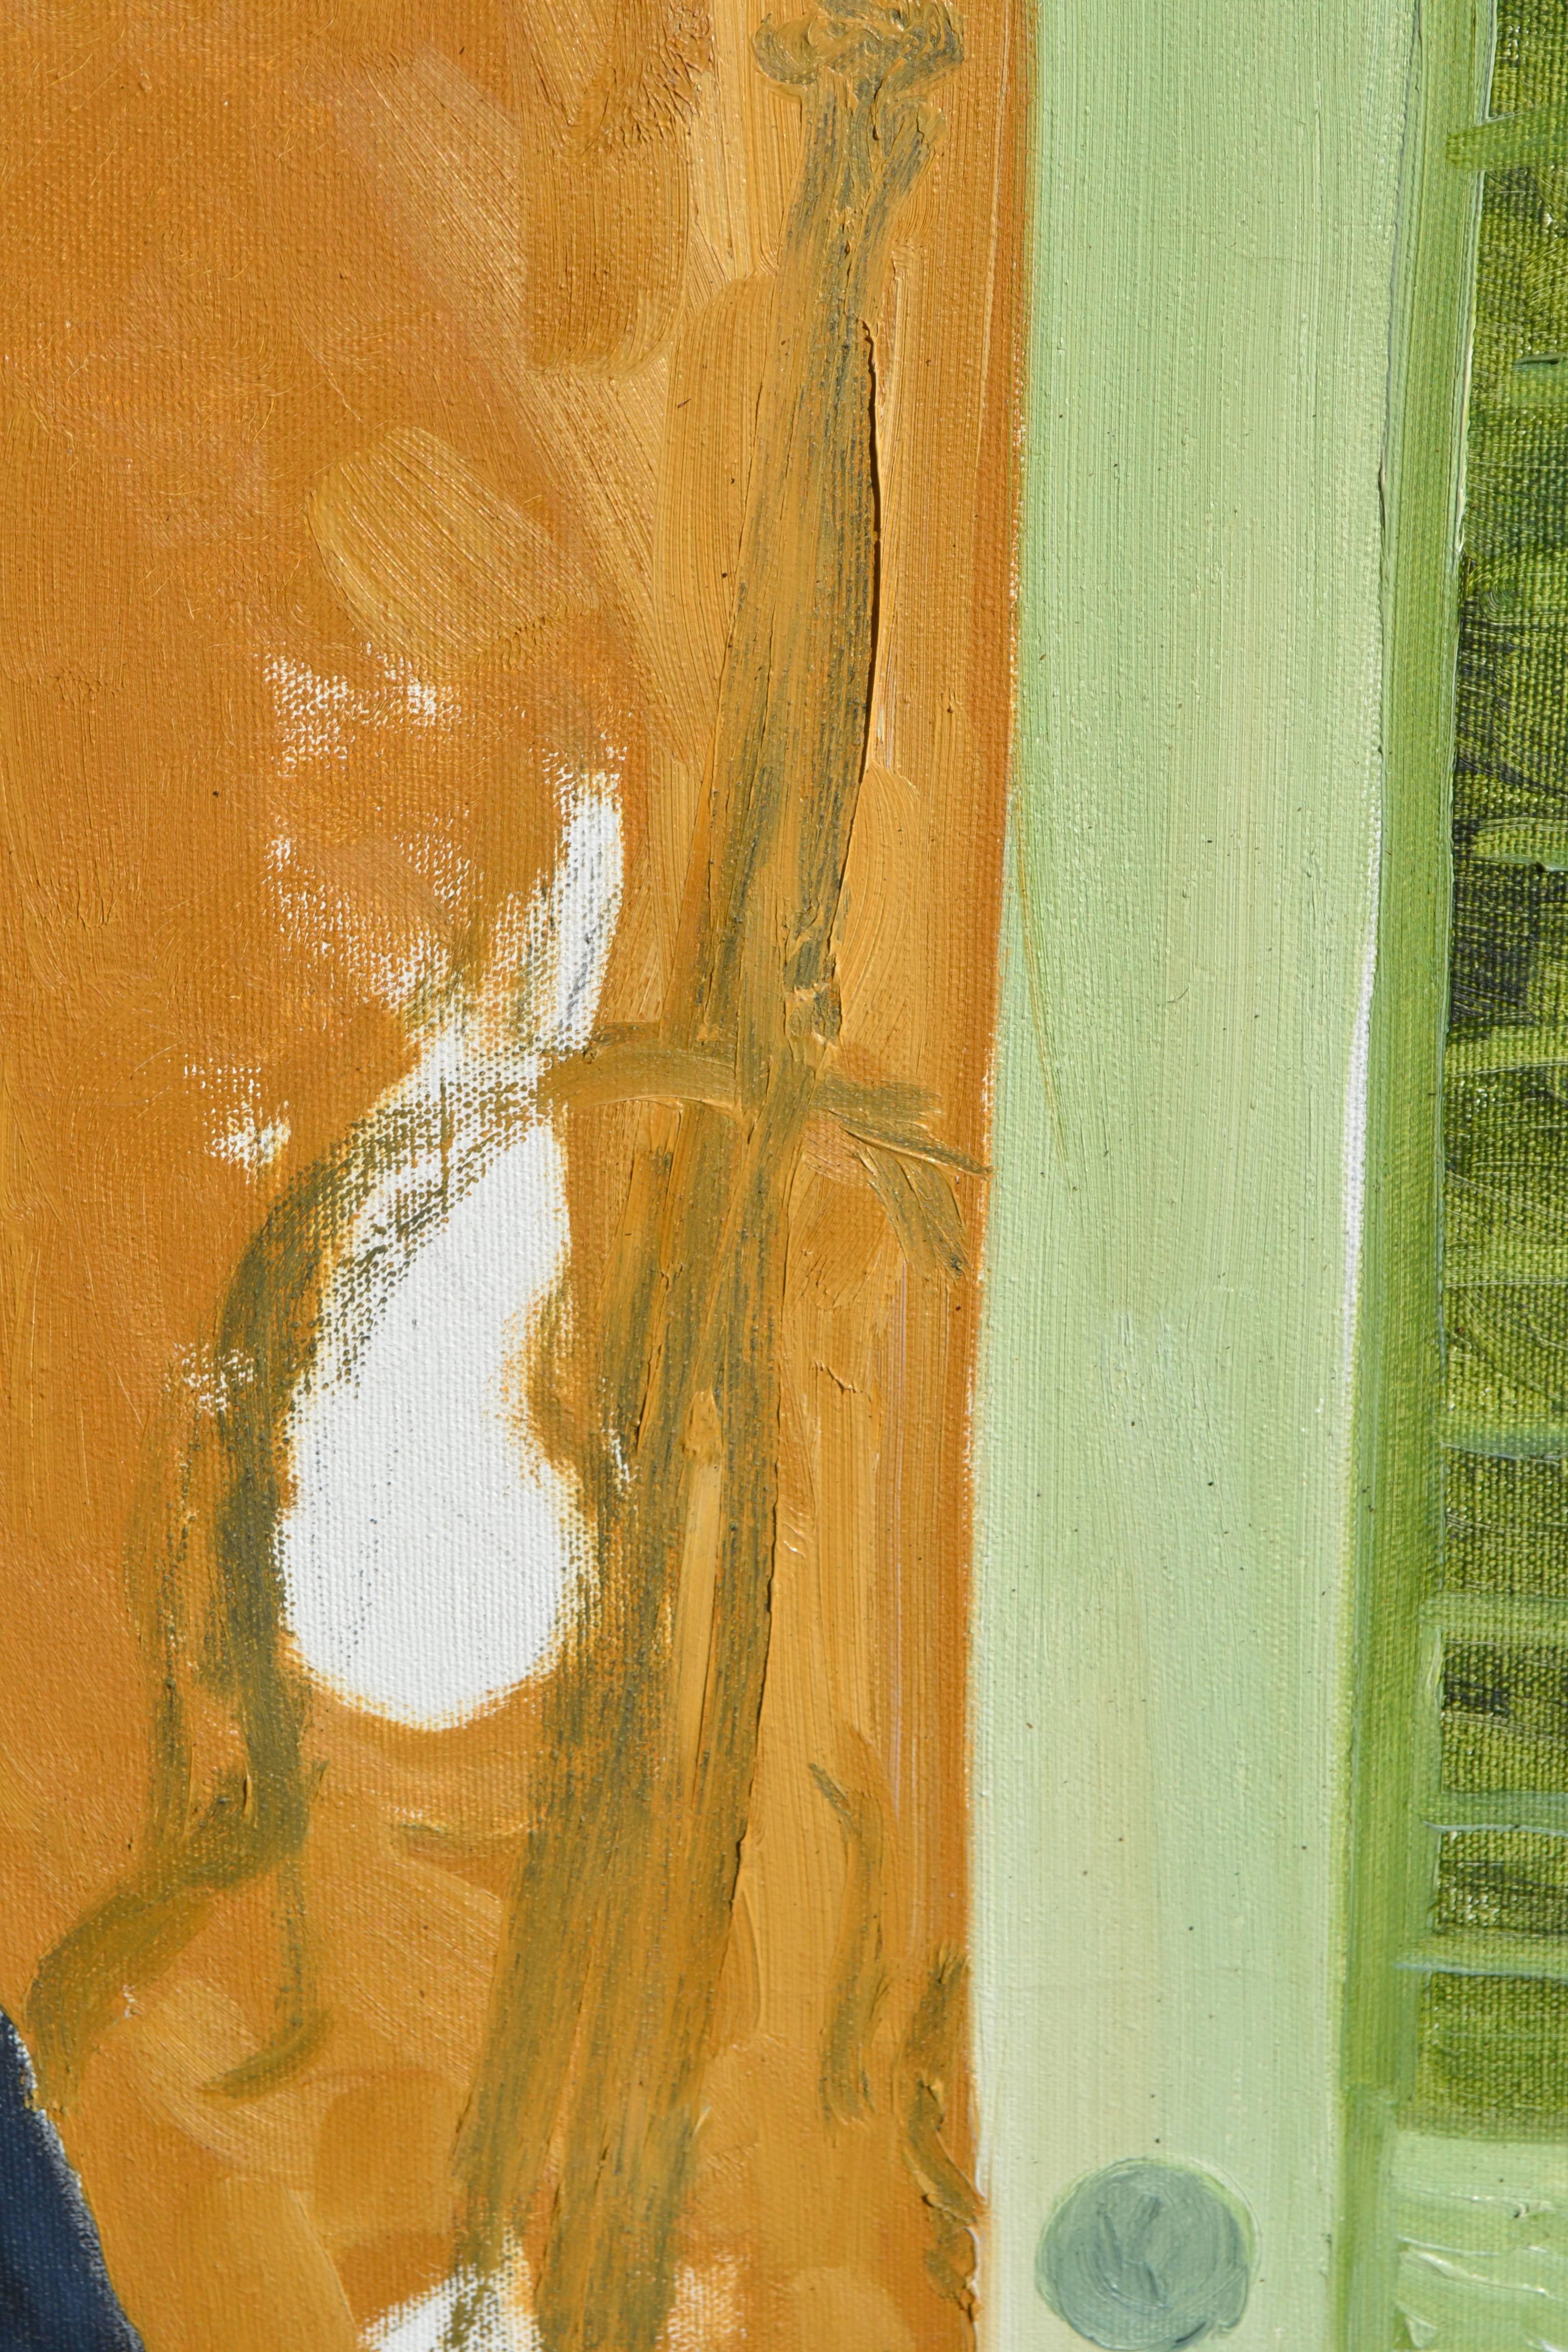 Singing At the Moon, Wolf in einem Tux - Abstrakte figurative Skulptur  (Abstrakter Expressionismus), Painting, von G. Lester